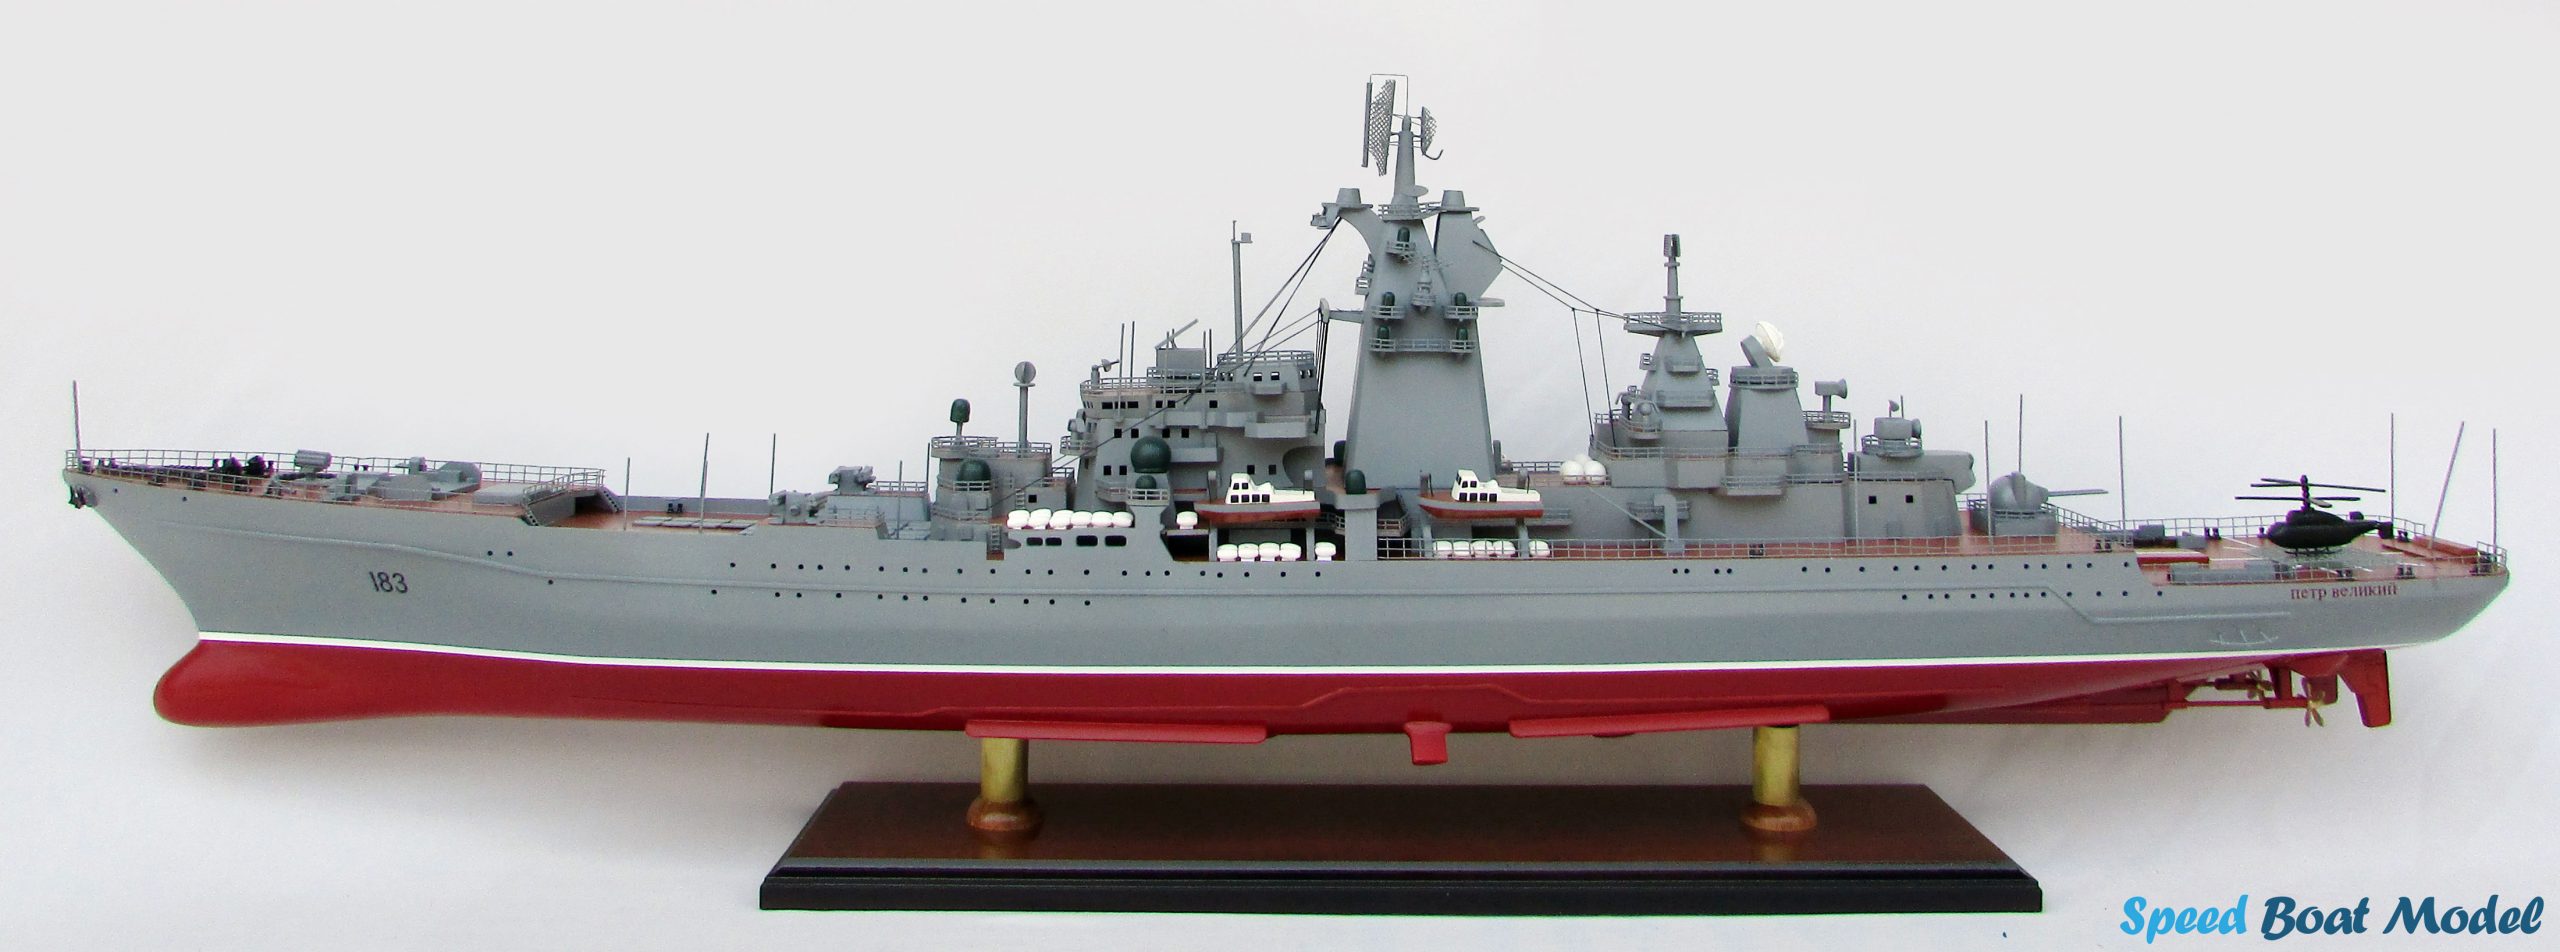 Pyotr Velikiy Russian Warship Model 39.3"